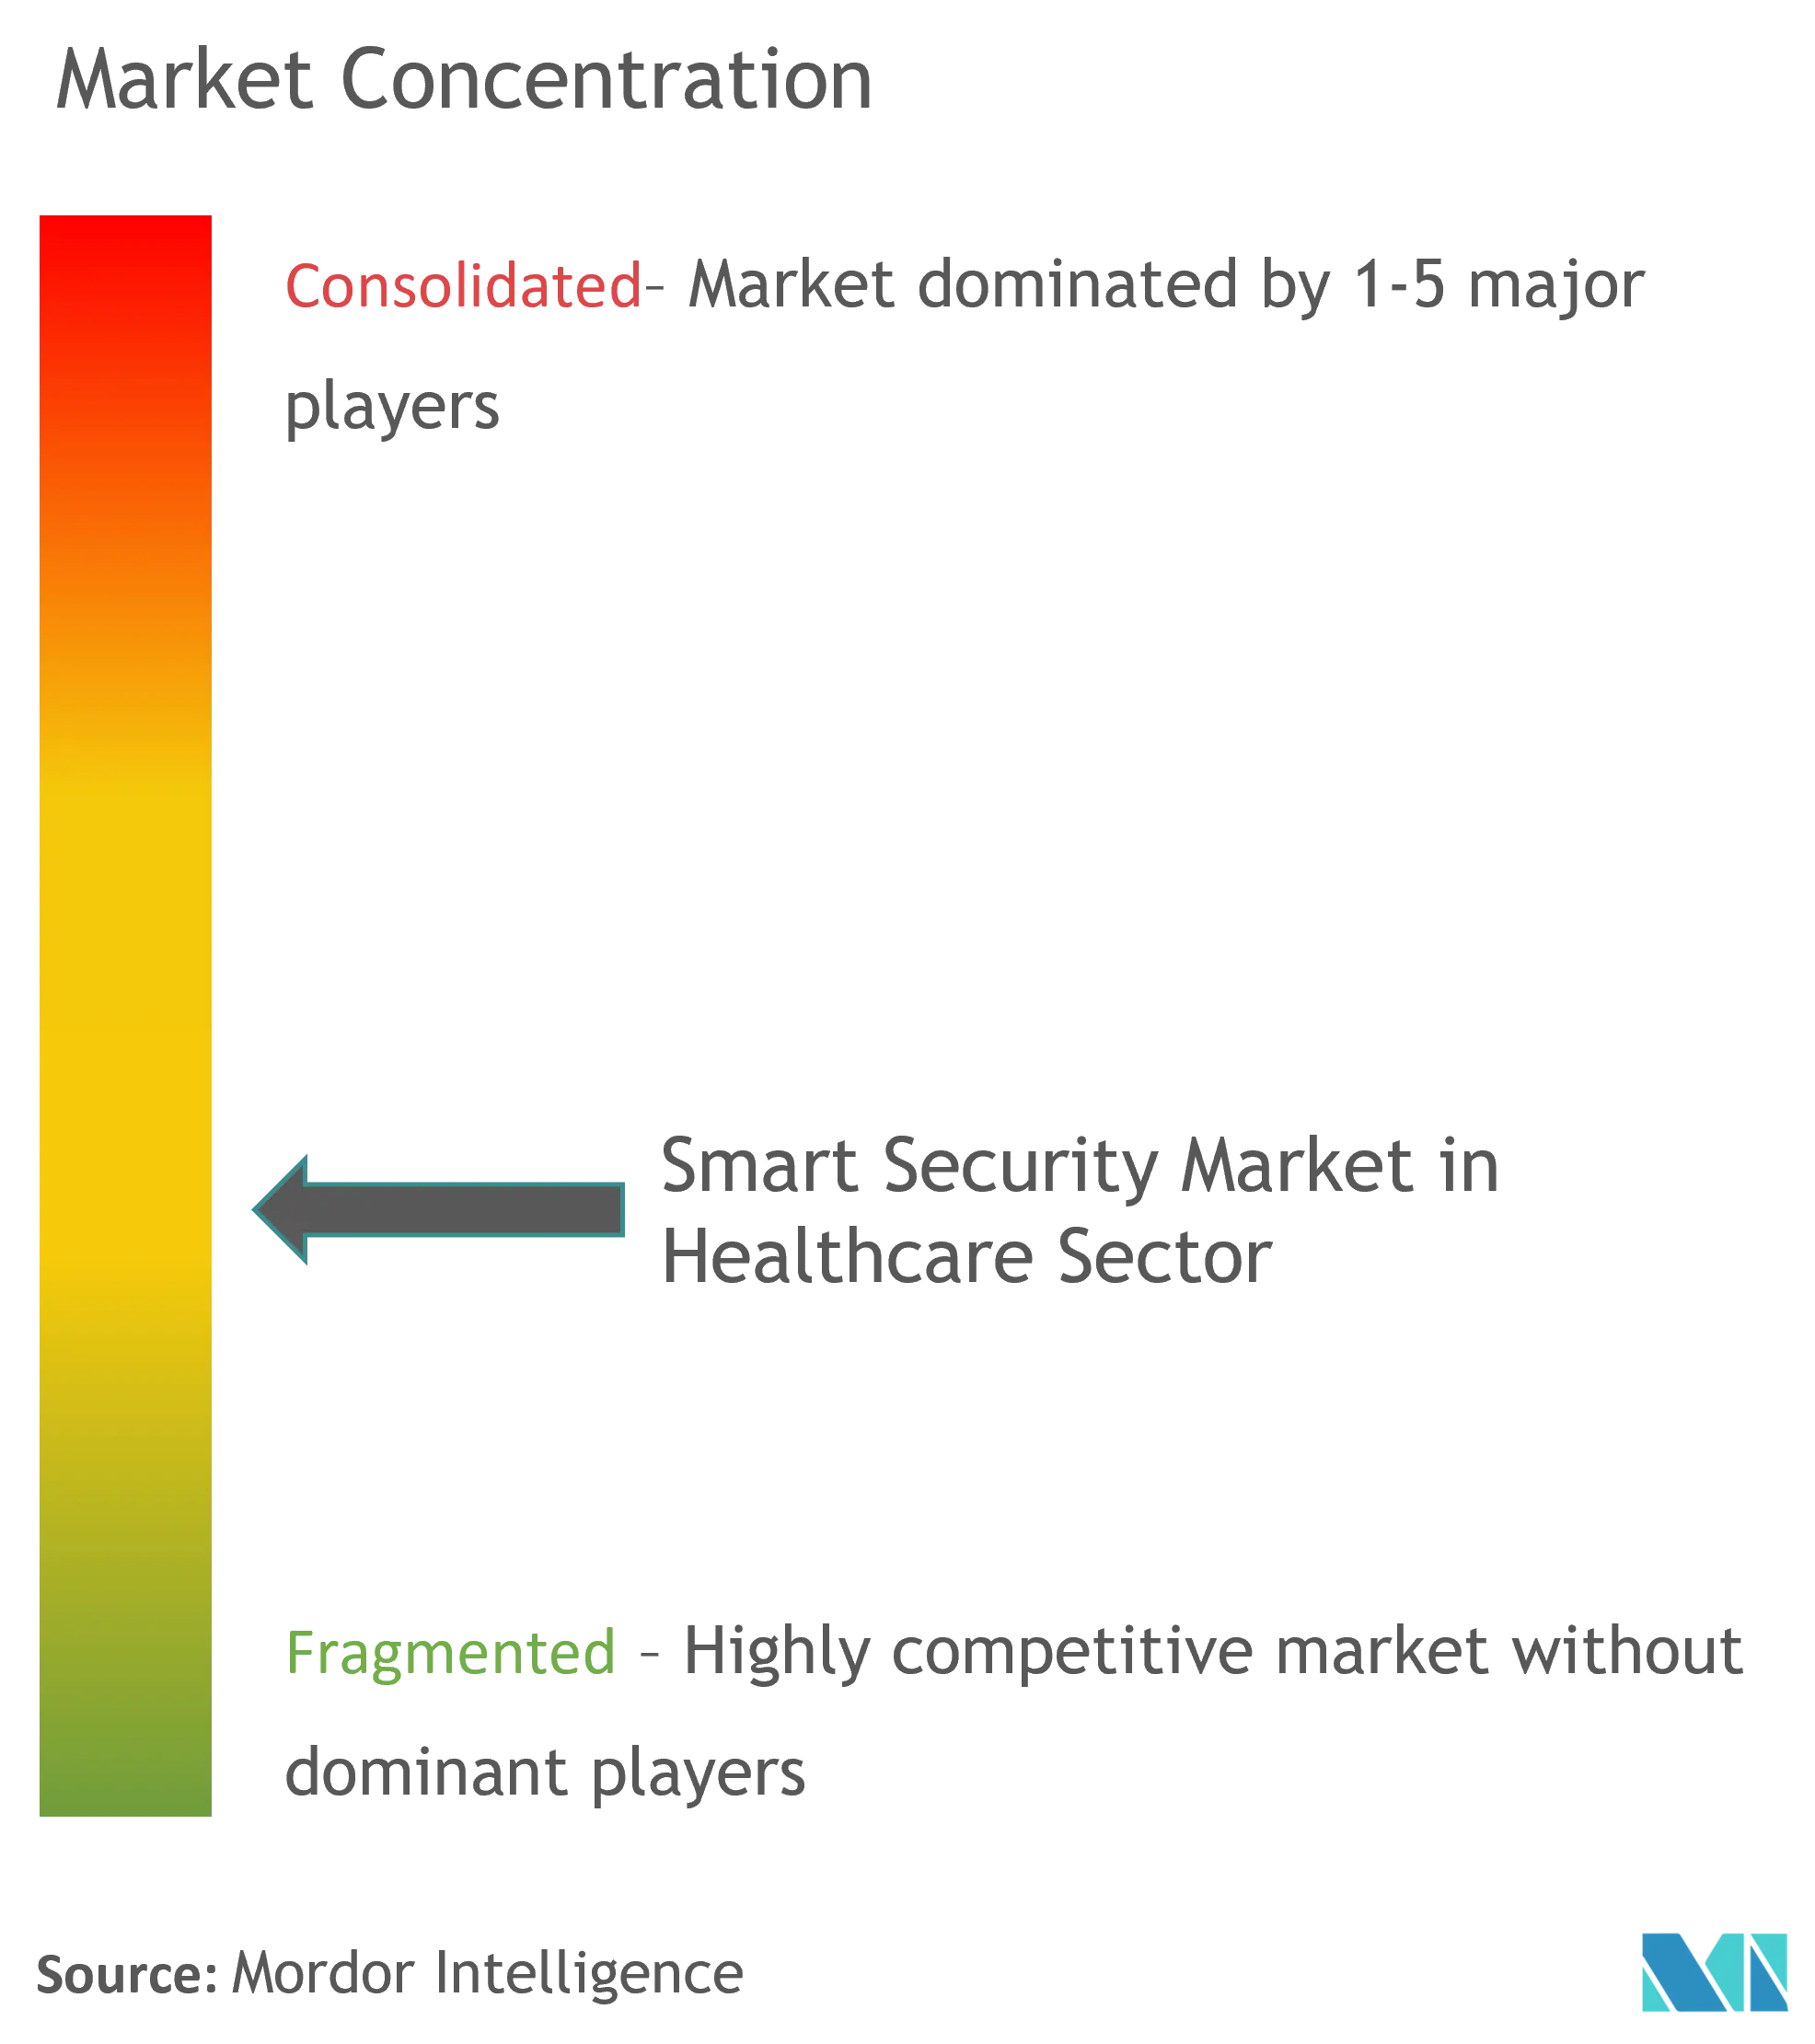 Markt für intelligente Sicherheit im GesundheitswesenMarktkonzentration